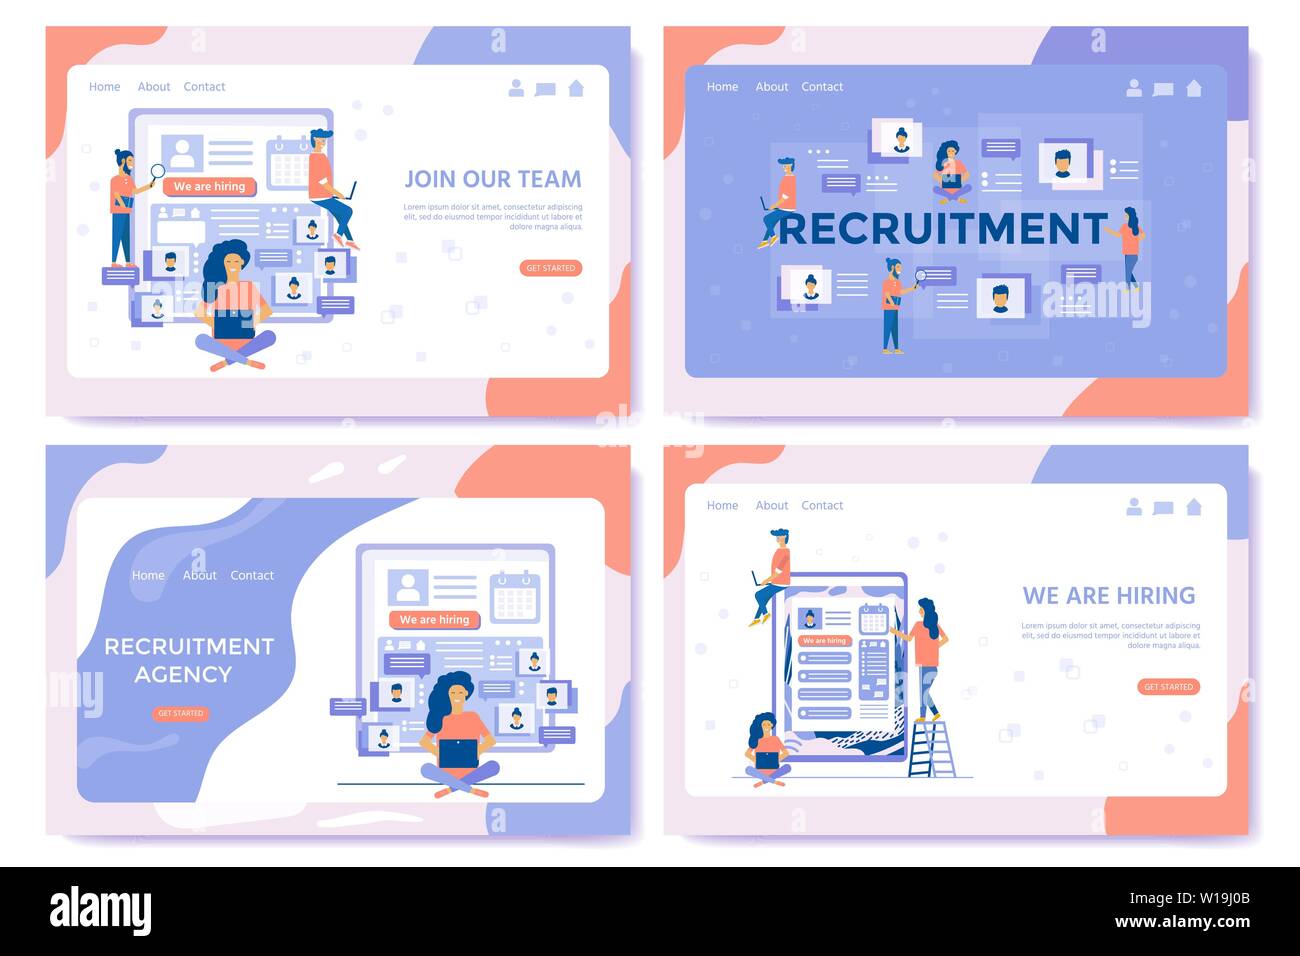 Recruitment Agency, Konzept mit Zeichen für soziale Medien, Dokumente, Mitarbeiter,, Webbanner, Infografiken, Landing Page. Satz von Illustrationen Stock Vektor